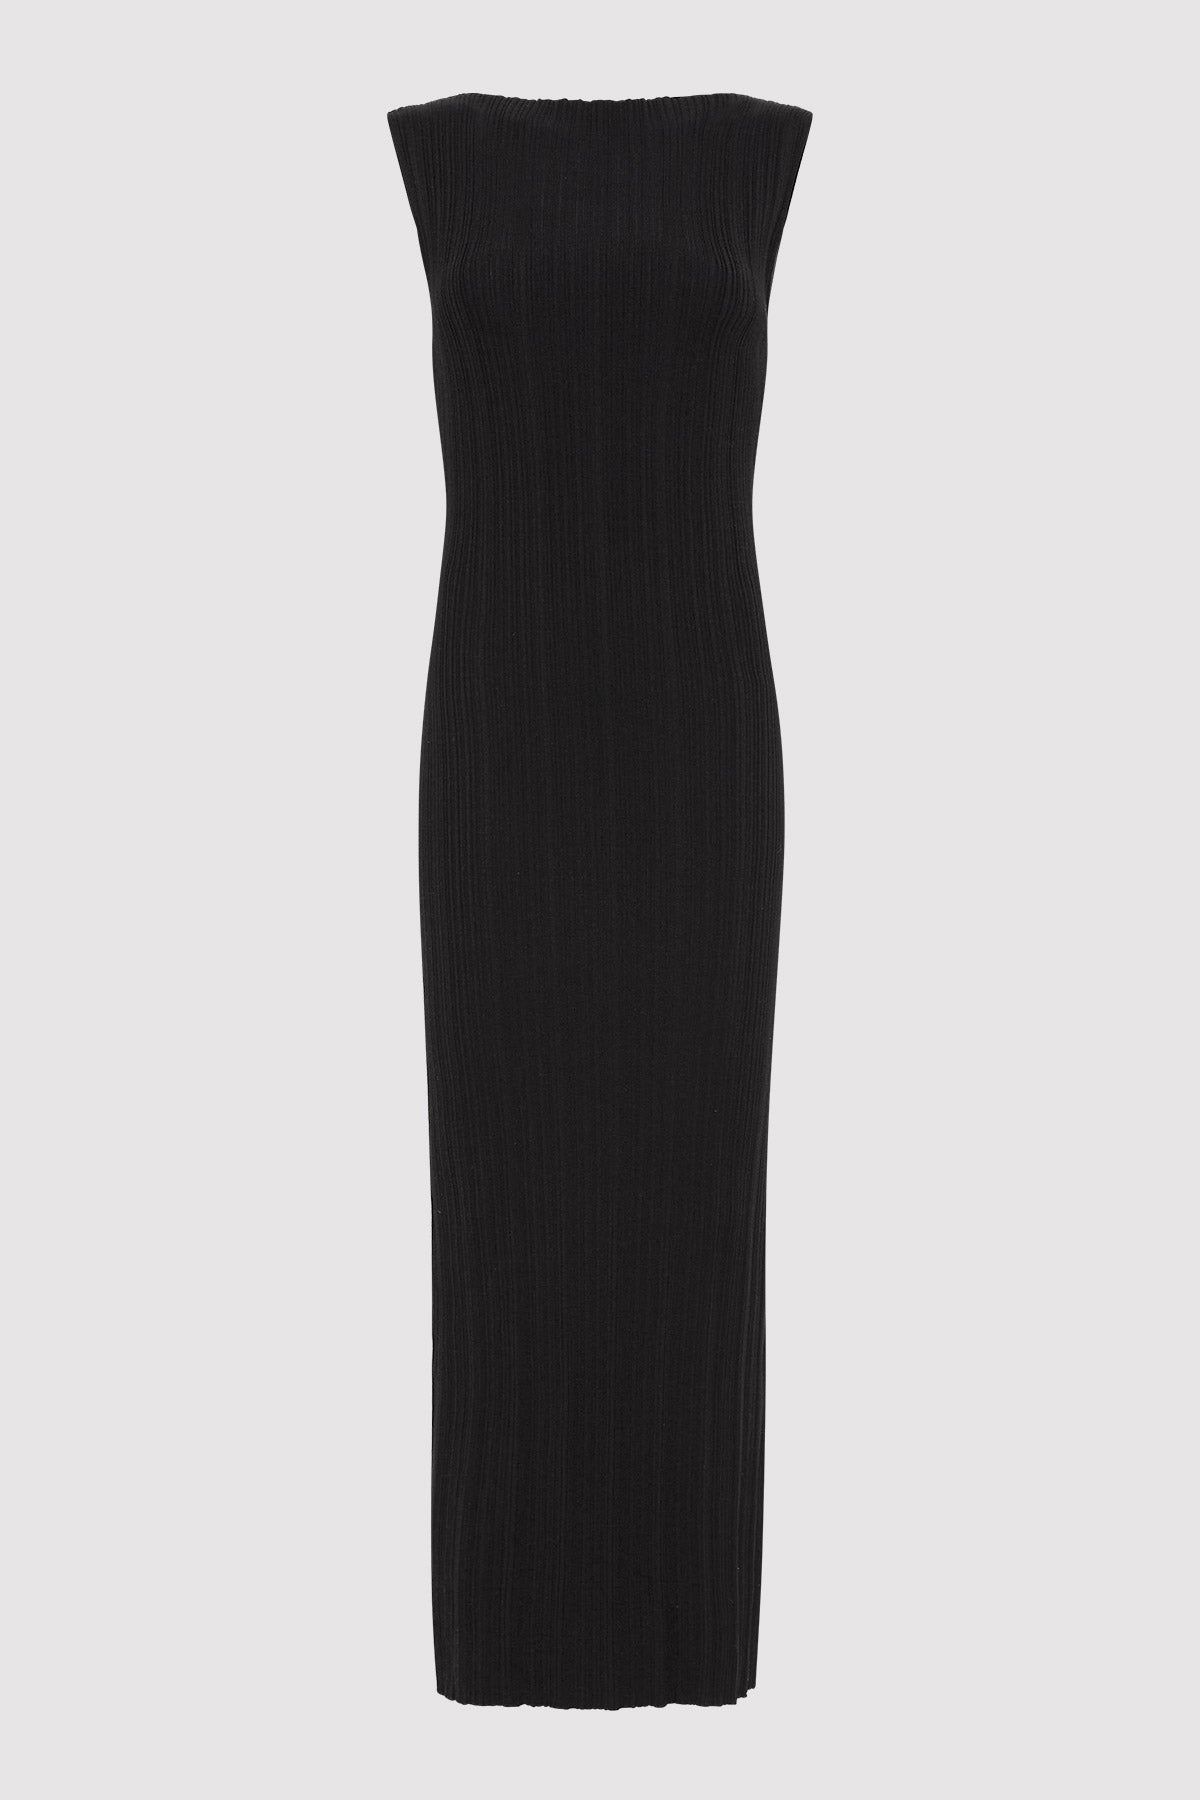 Vas Pleat Knit Dress - Black